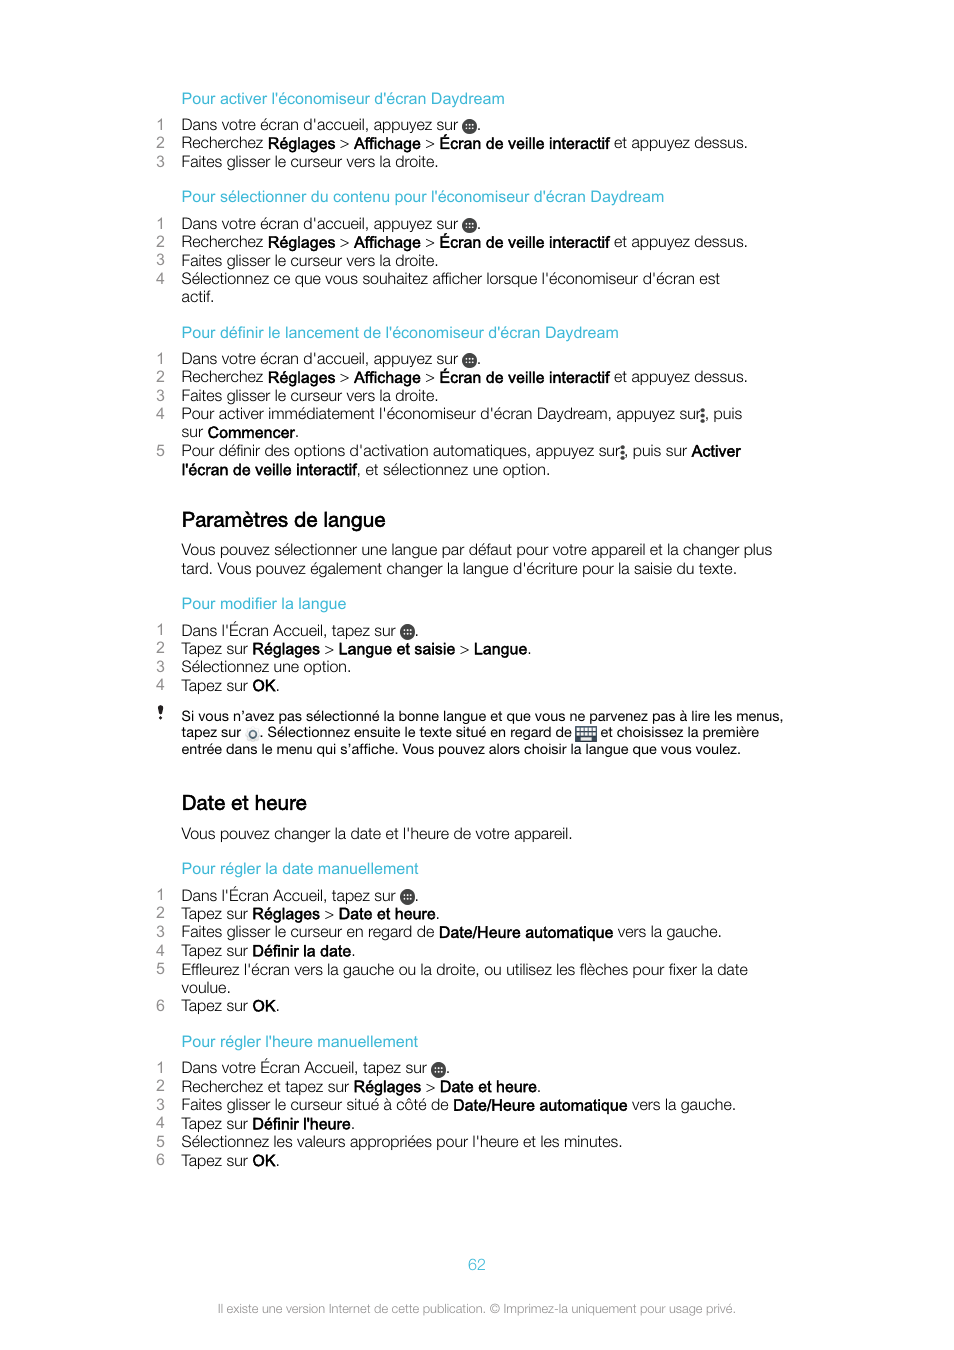 Paramètres de langue, Date et heure, Paramètres de langue date et heure | Sony Xperia XA Ultra F3211 Manuel d'utilisation | Page 62 / 138